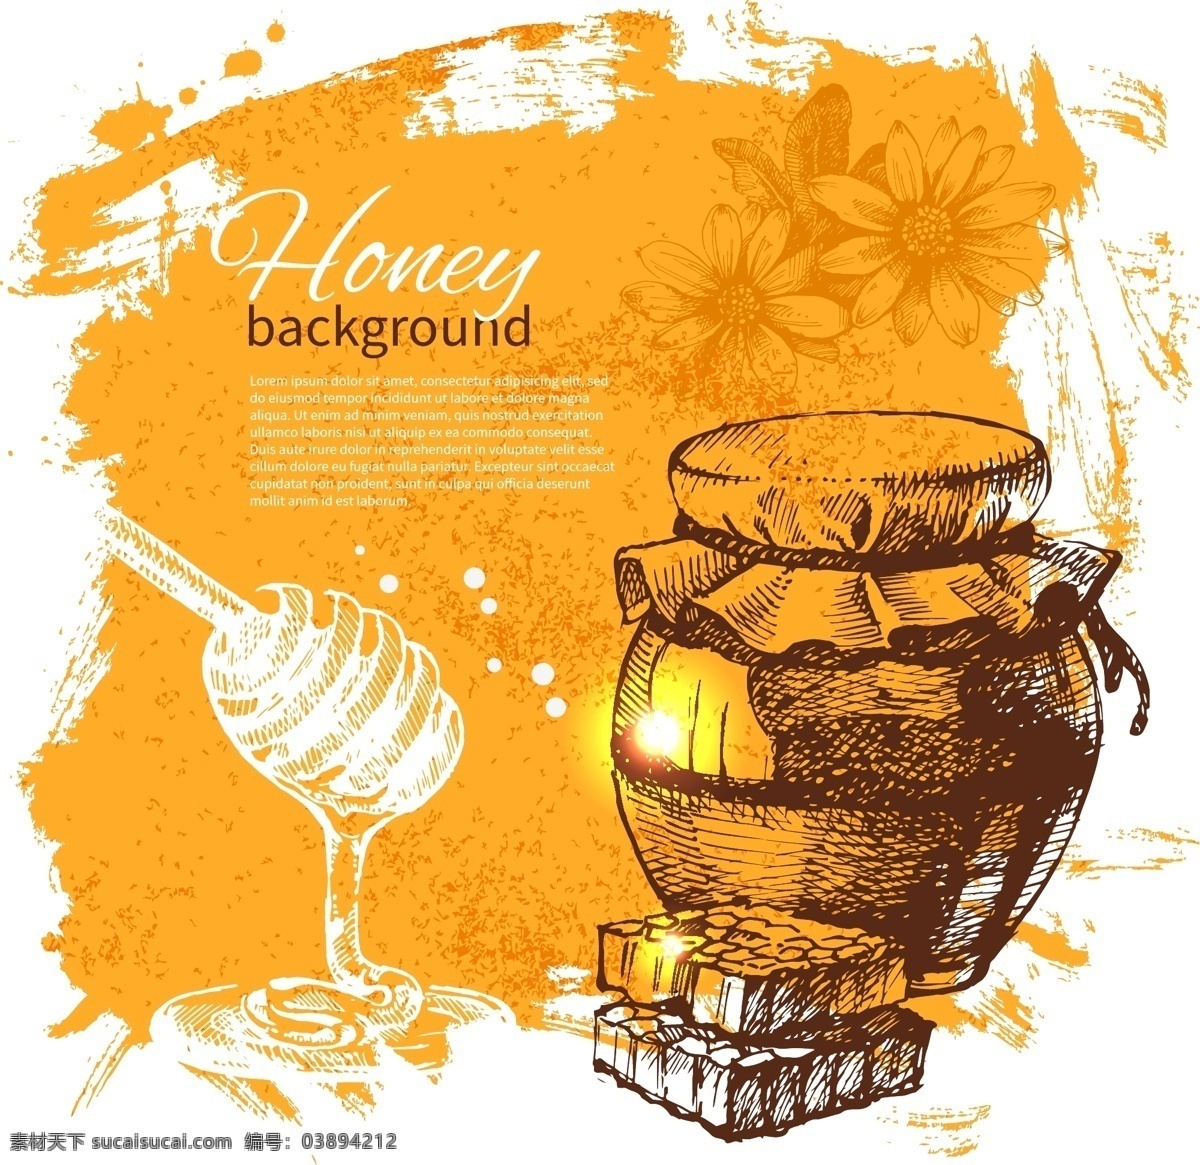 蜂蜜 罐子 笔触 背景 蜜罐 蜂蜜插画 树叶 蜜糖 墨迹背景 生活百科 矢量素材 白色